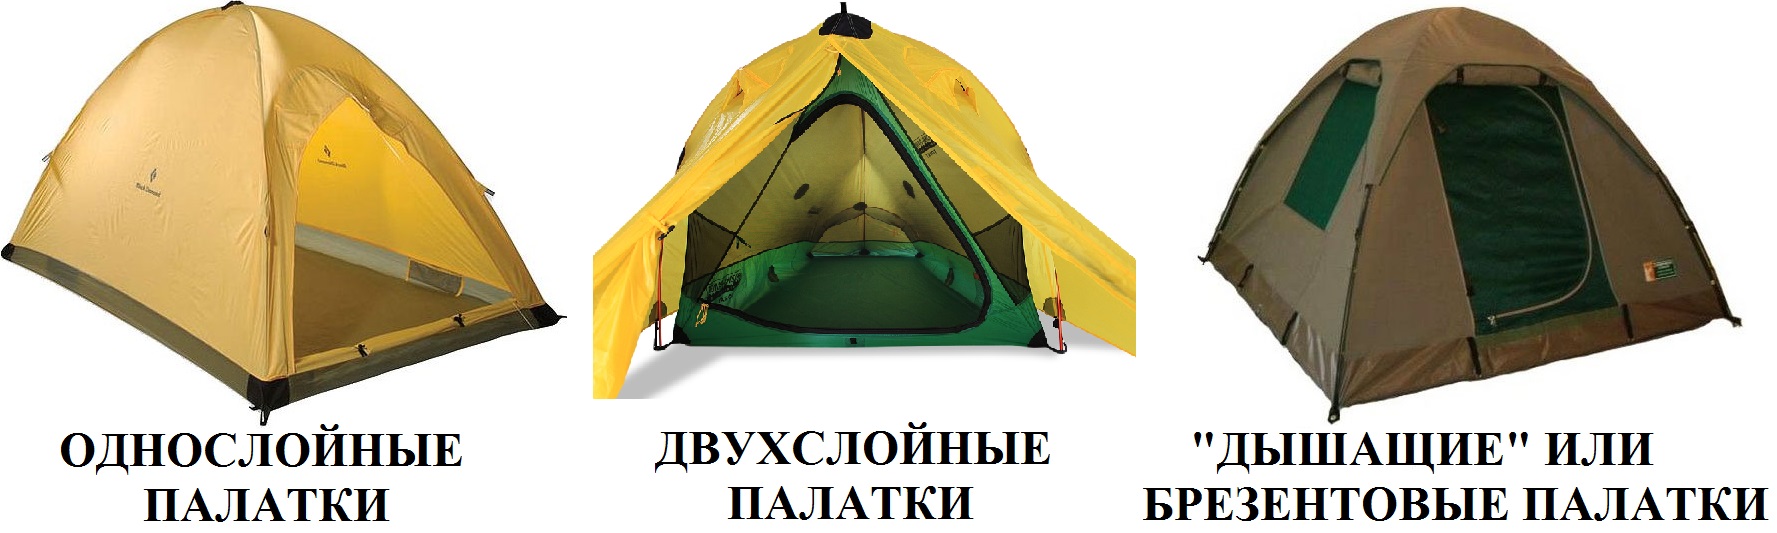 Размеры слоев палатки для зимней рыбалки